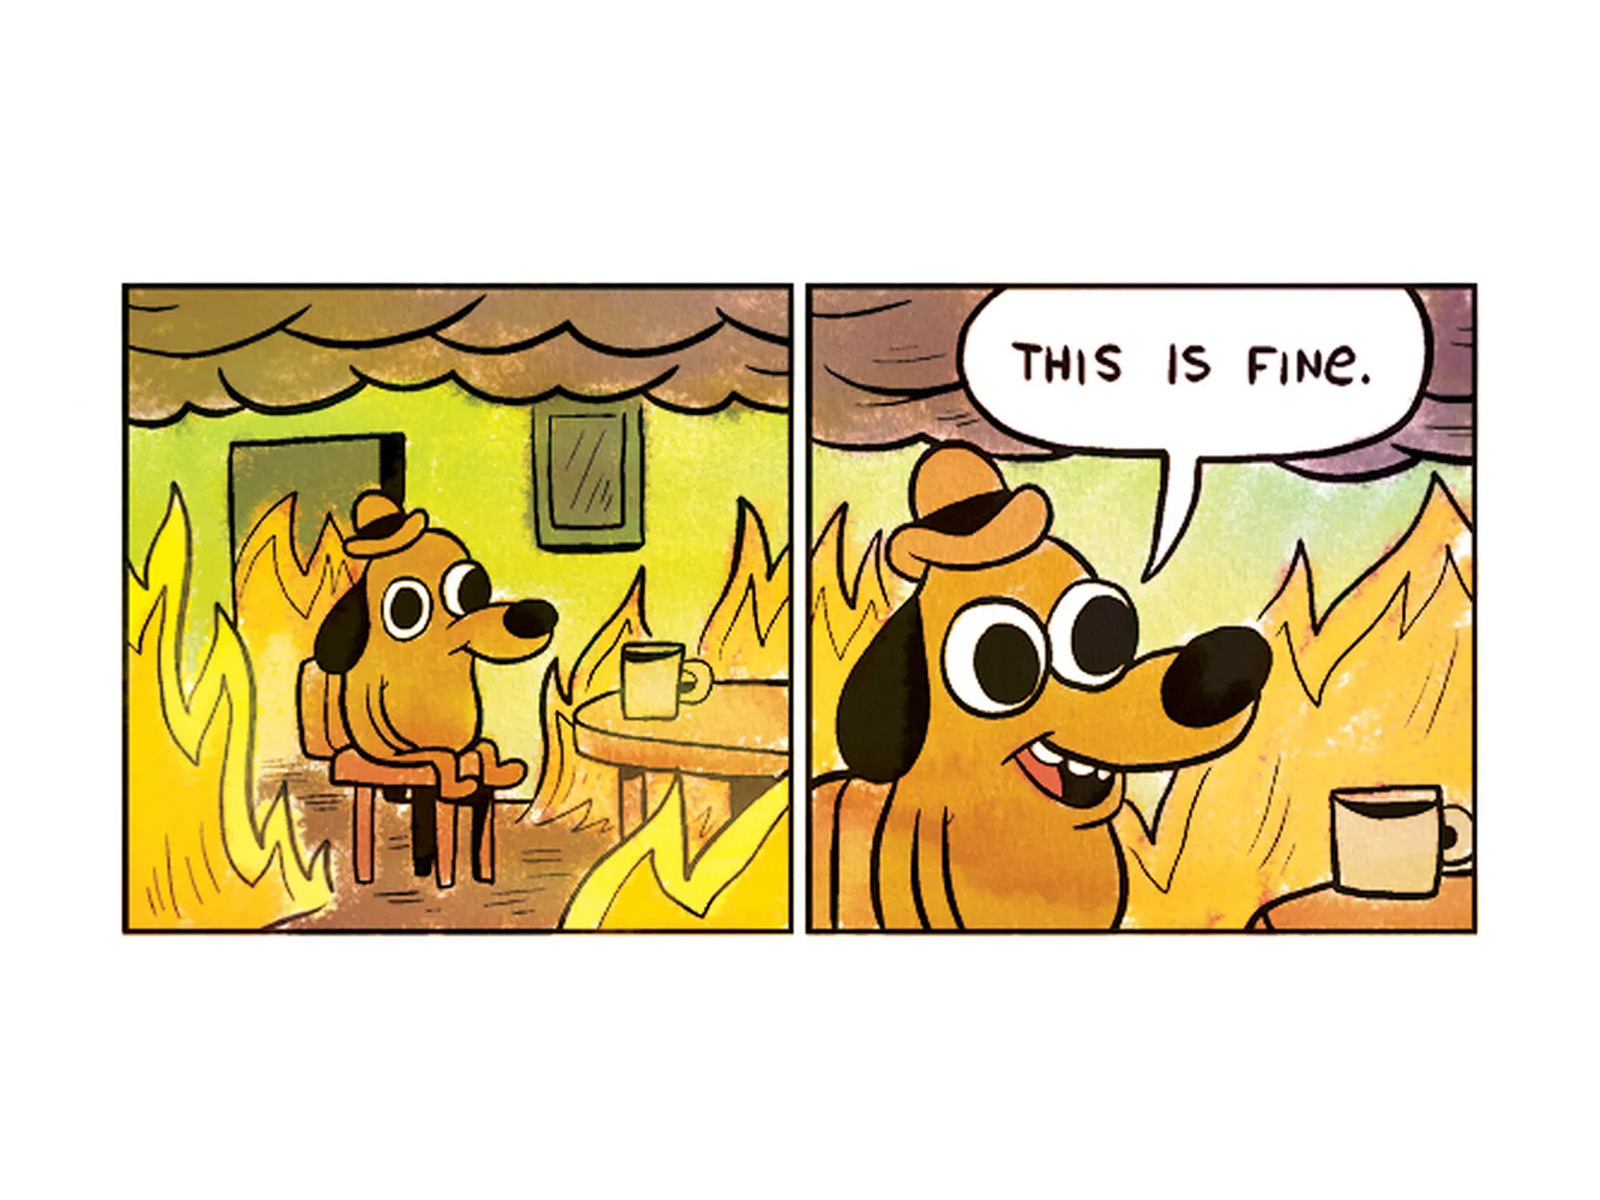 Ein Hund sitzt mit einer Kaffeetasse in einem brennenden Haus und sagt: This is fine.